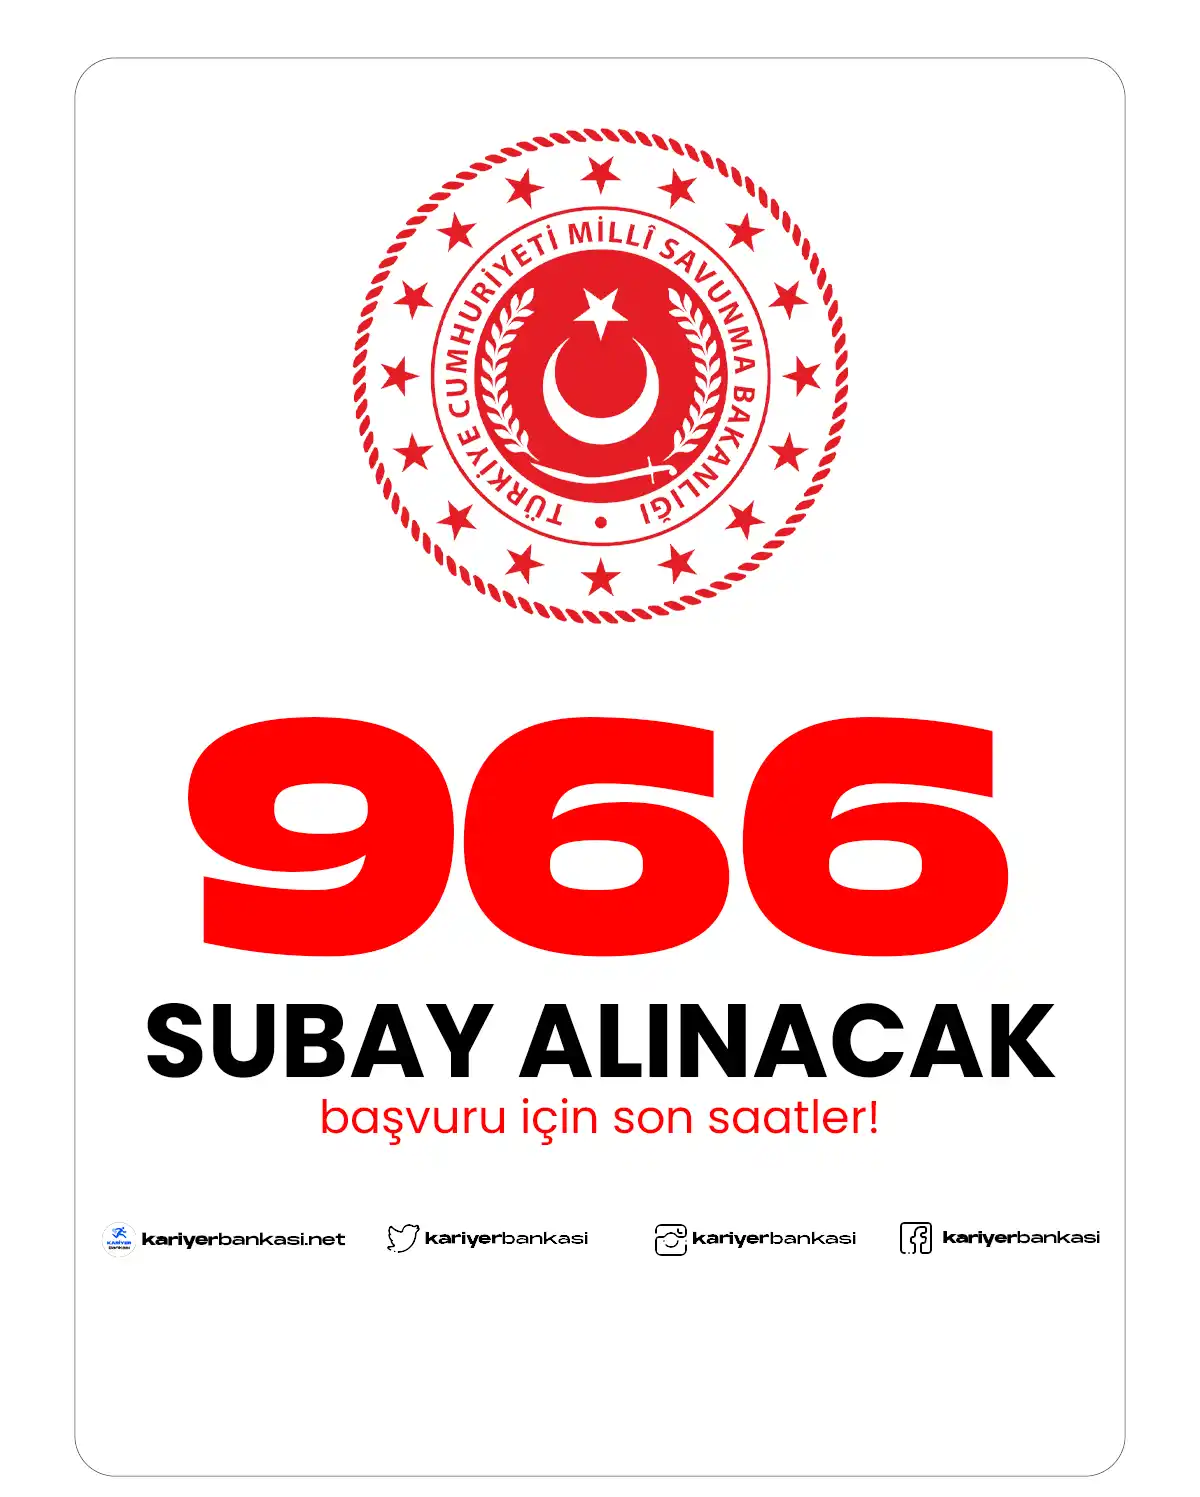 966 SUBAY ALIMI